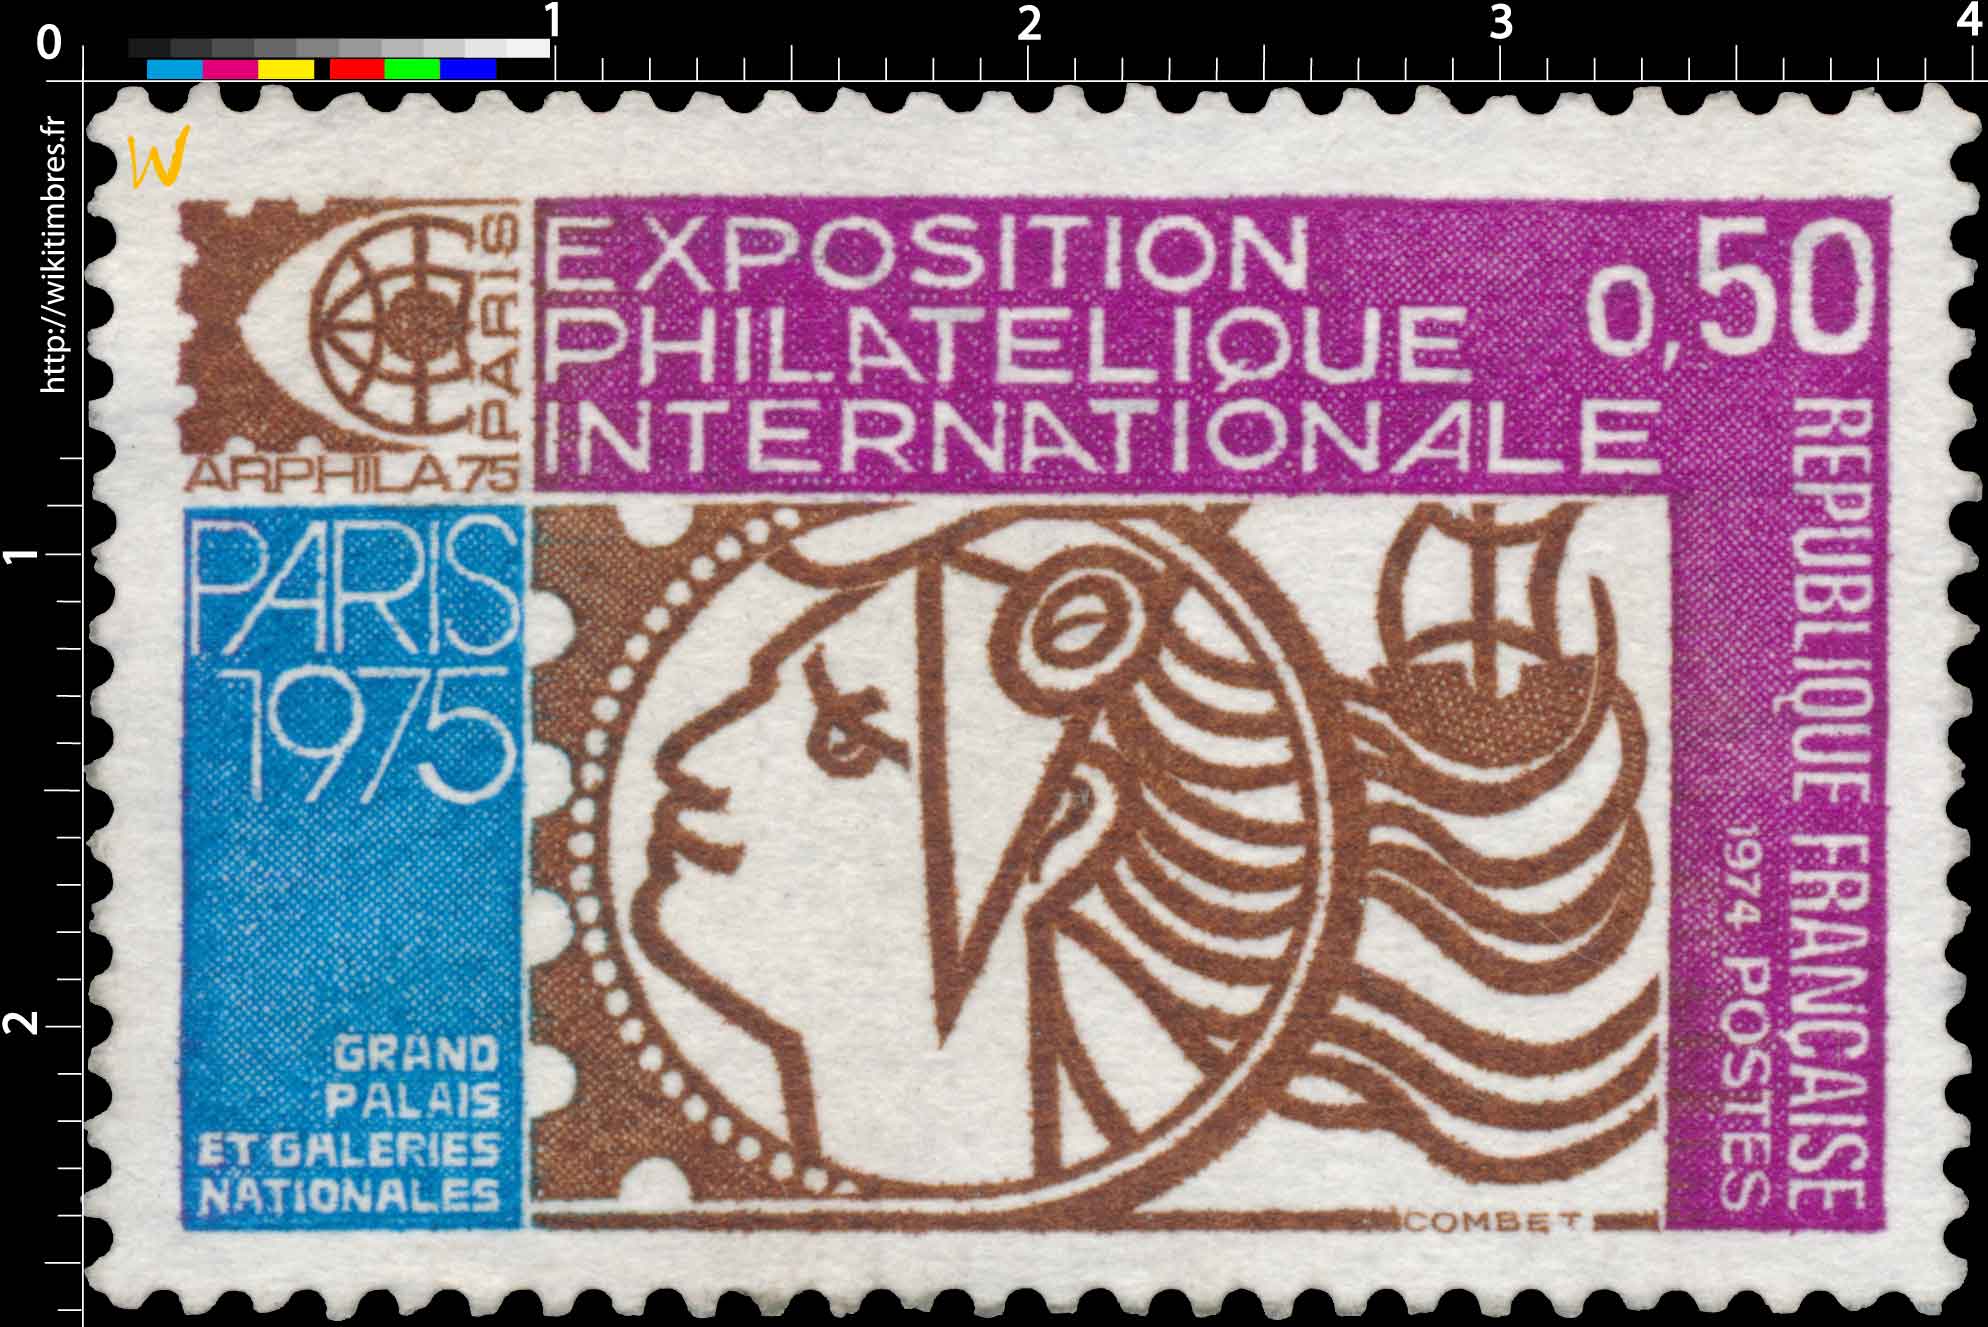 1974 EXPOSITION PHILATÉLIQUE INTERNATIONALE ARPHILA 75 PARIS 1975 GRAND PALAIS ET GALERIES NATIONALES